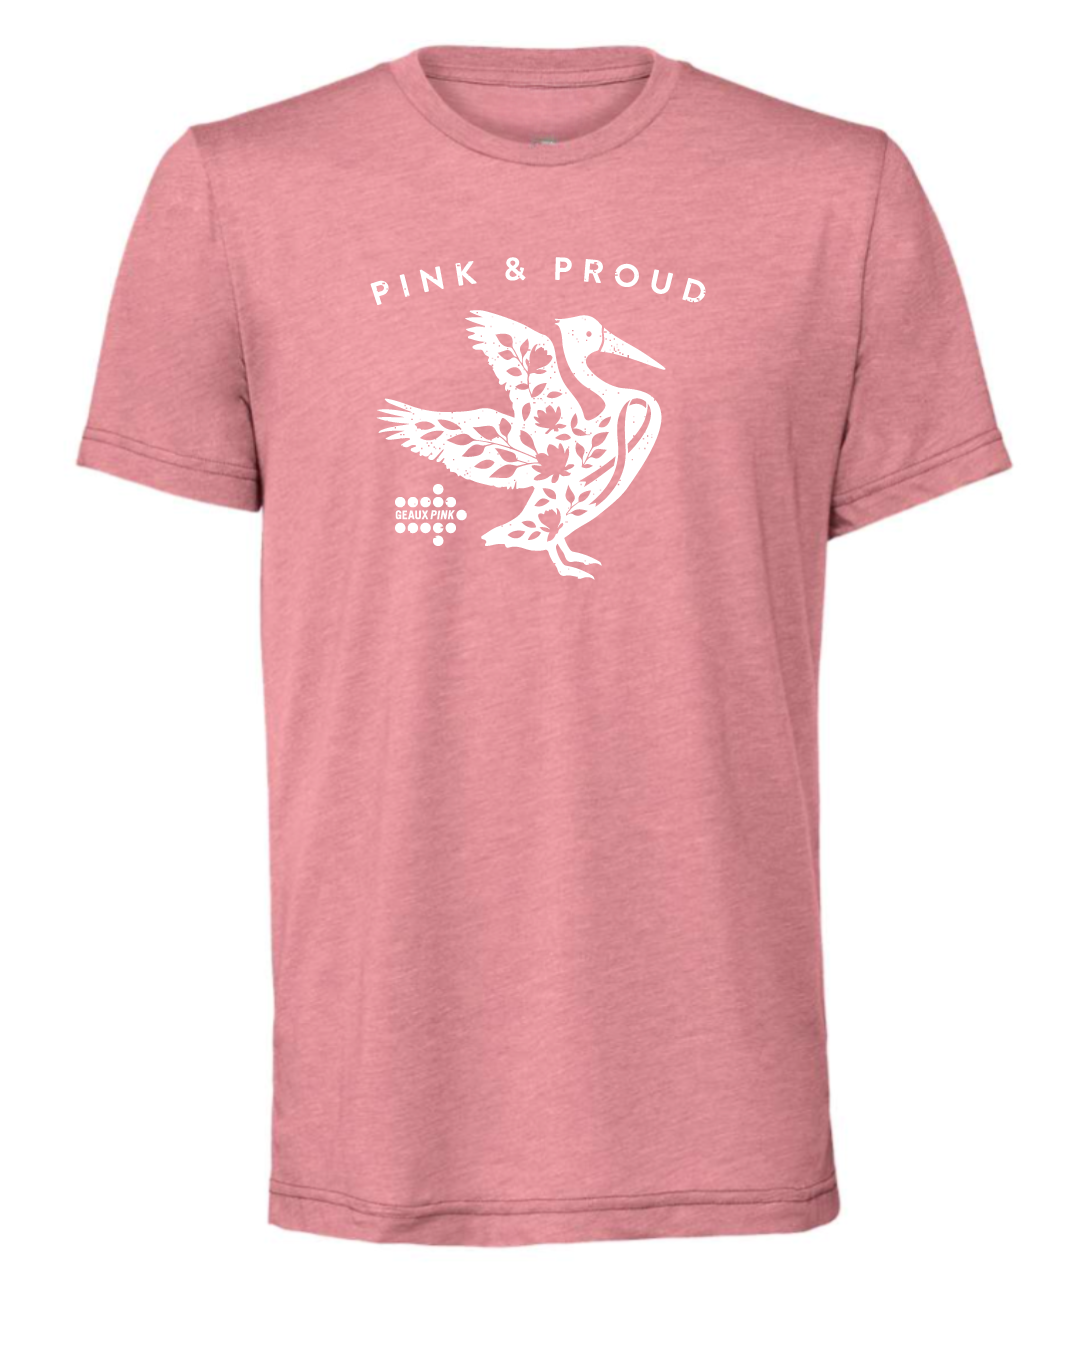 Preorder Pink & Proud Pelican |  Geaux Pink